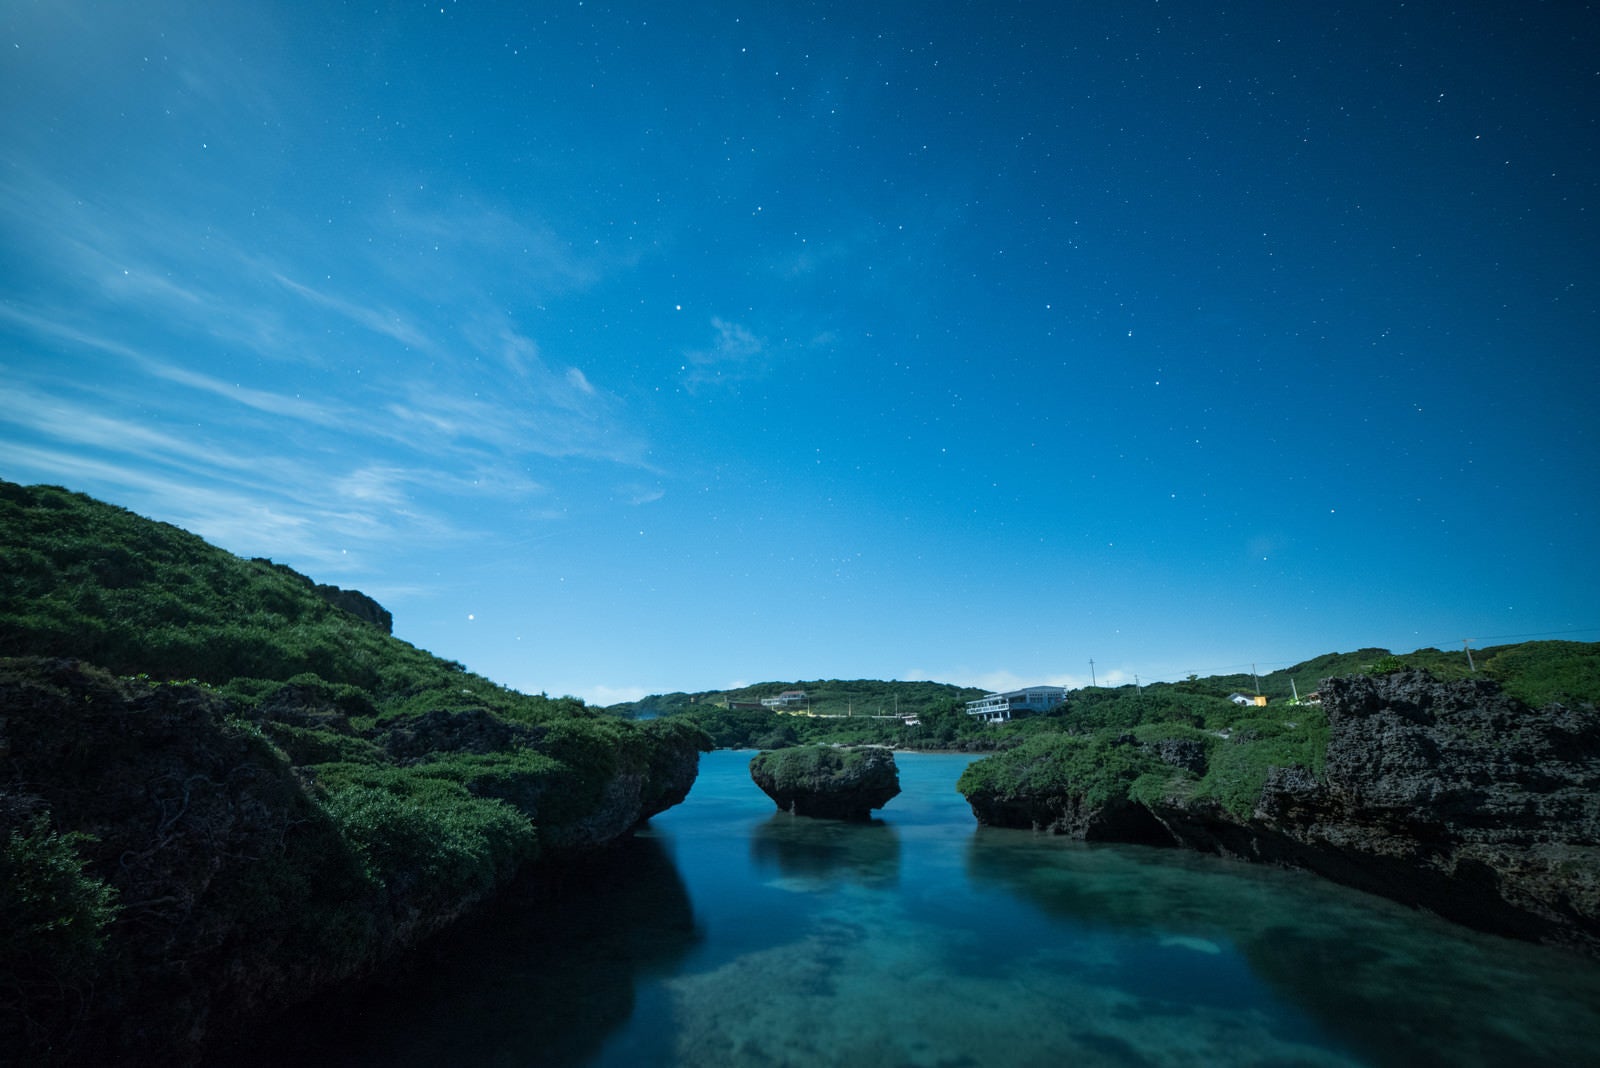 「星空と沖縄の海」の写真